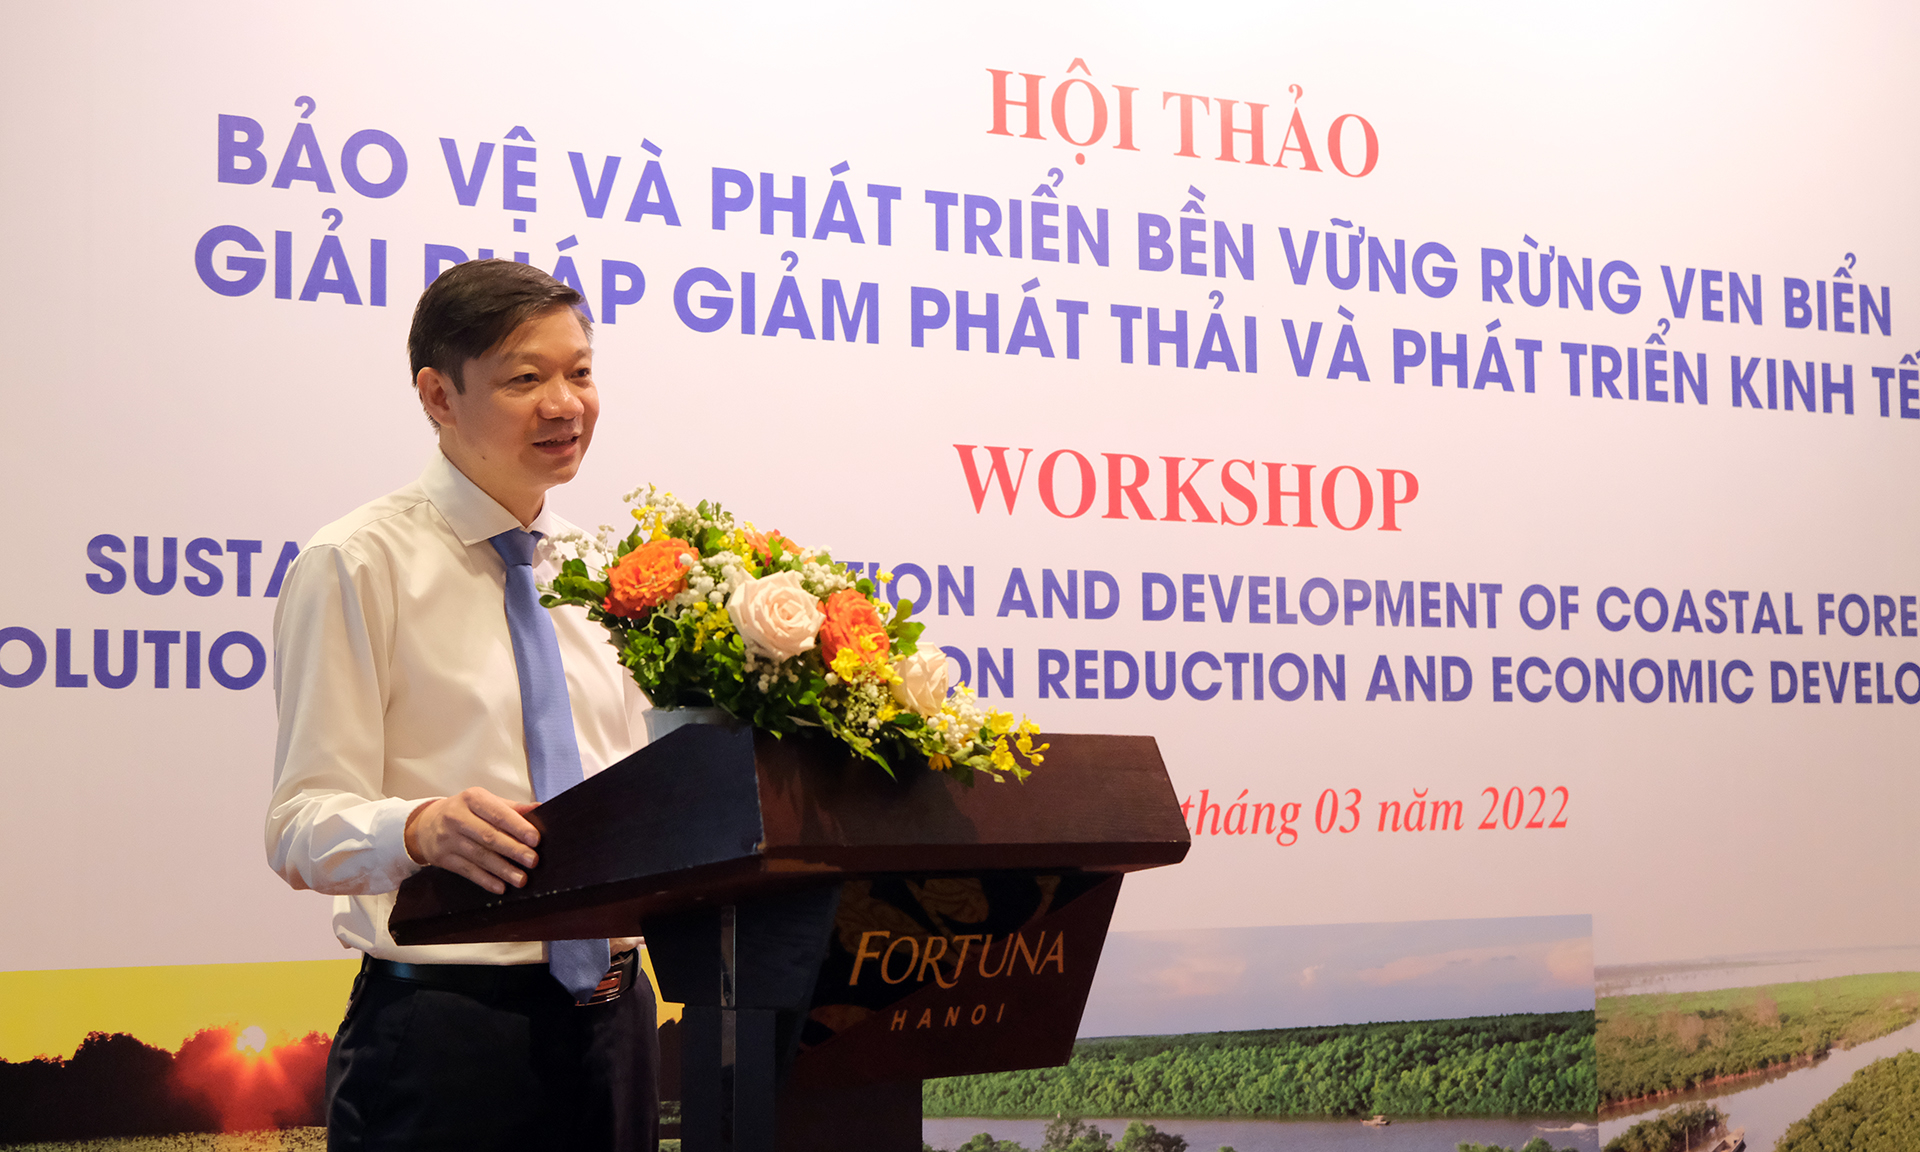 Ông Trần Quang Bảo, Phó Tổng cục trưởng Tổng cục Lâm nghiệp phát biểu tại Hội thảo 'Bảo vệ và phát triển bền vững rừng ven biển - Giải pháp giảm phát thải và phát triển kinh tế'. Ảnh: Bá Thắng.